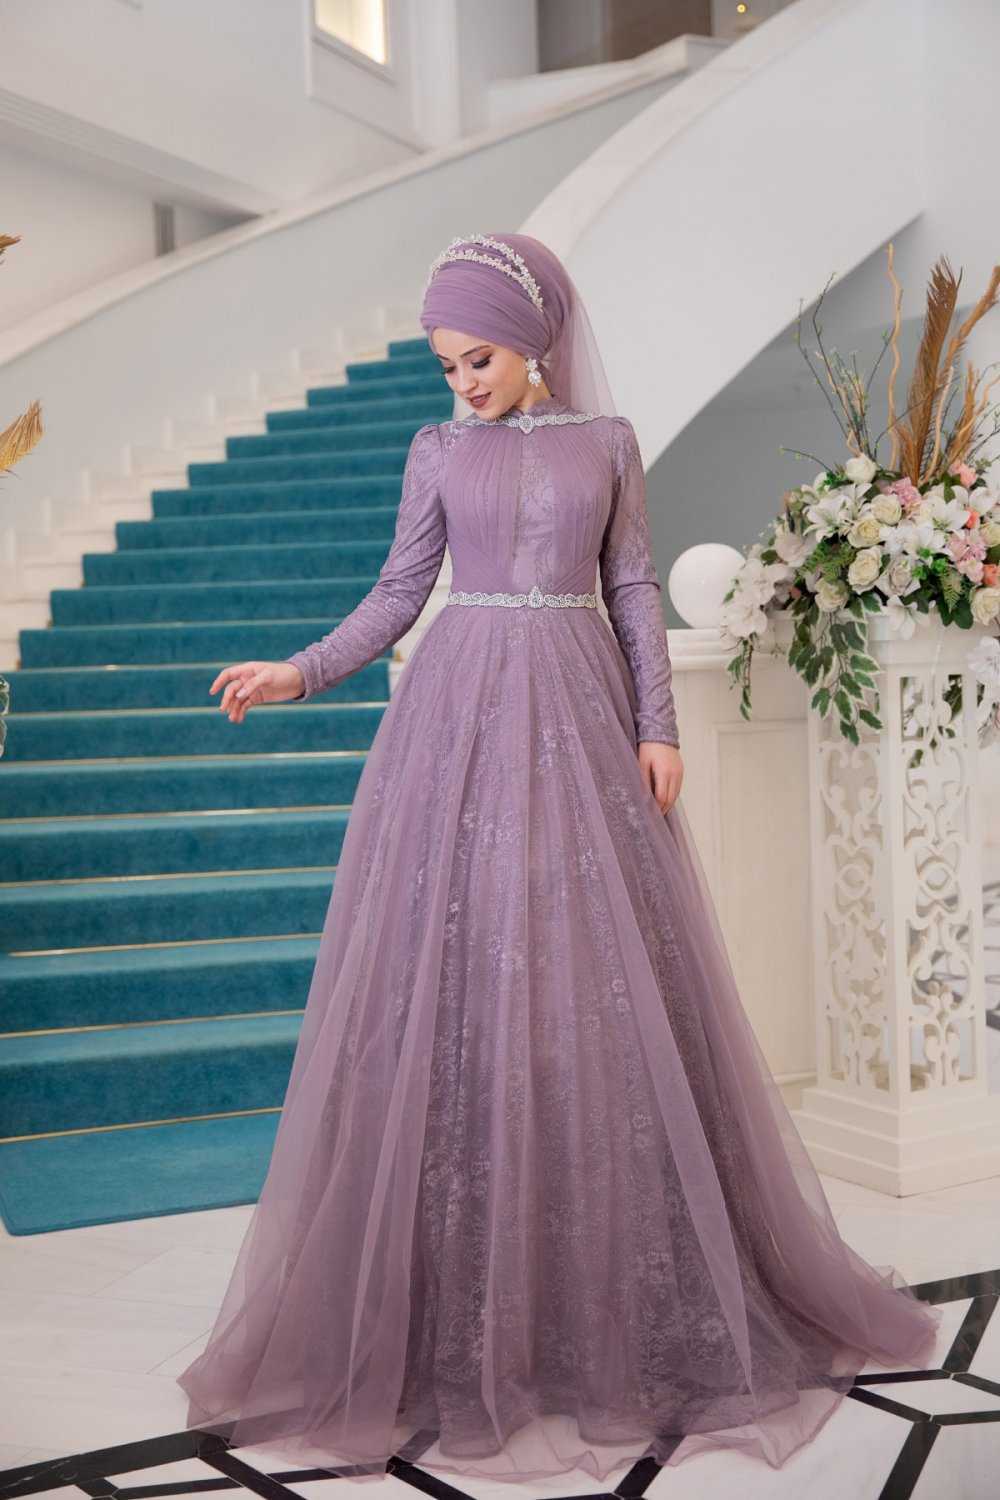 Al Marah Tesettür Rüya Abiye Elbise Modelleri